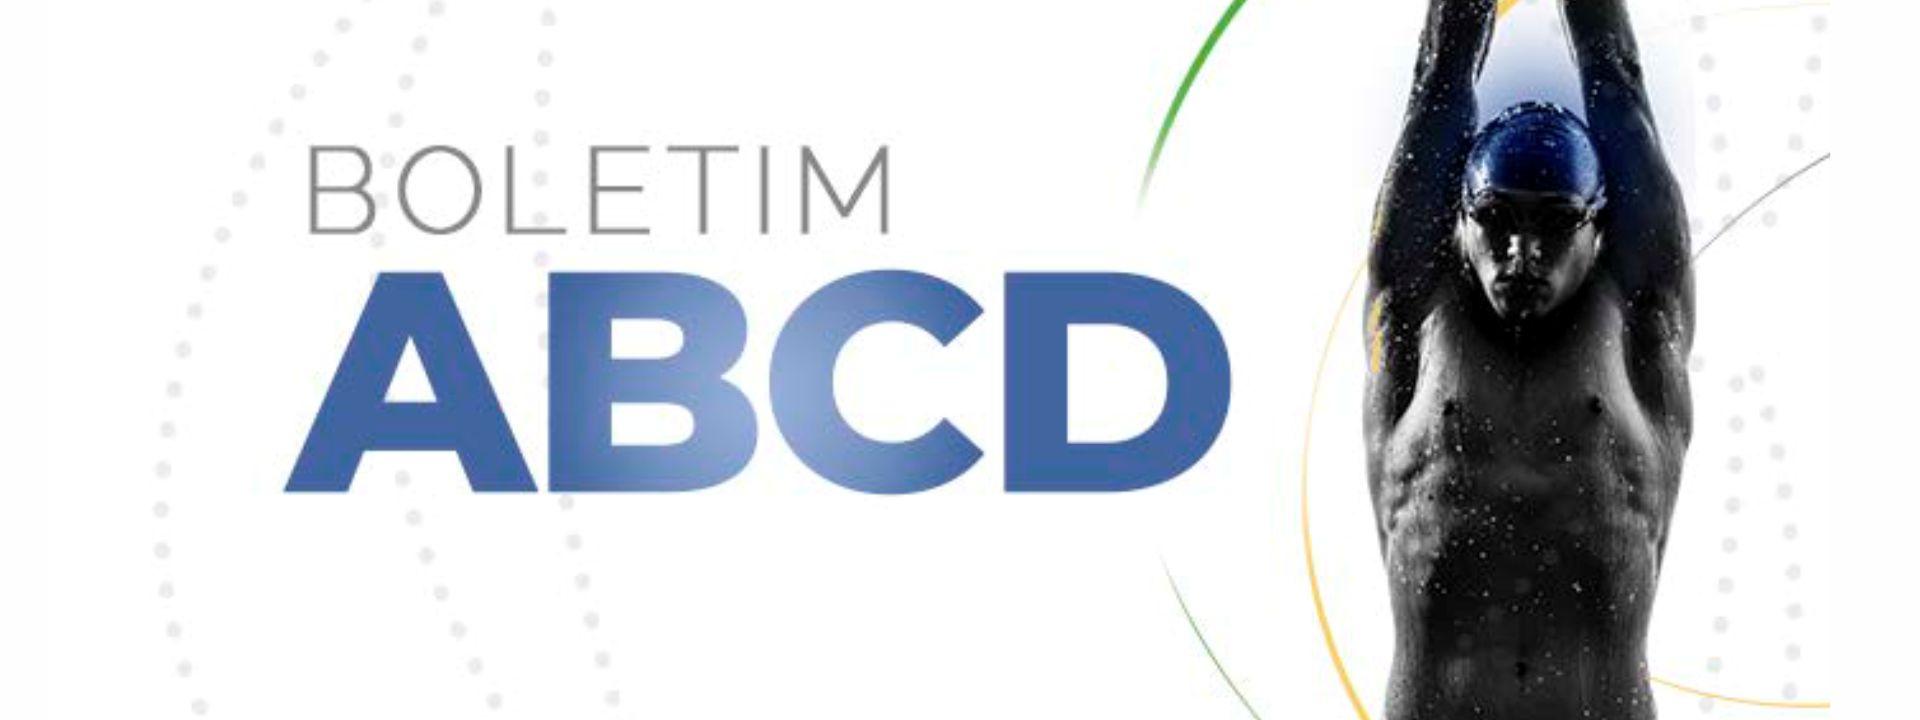 ABCD lança Boletim de janeiro com temas relevantes antidopagem